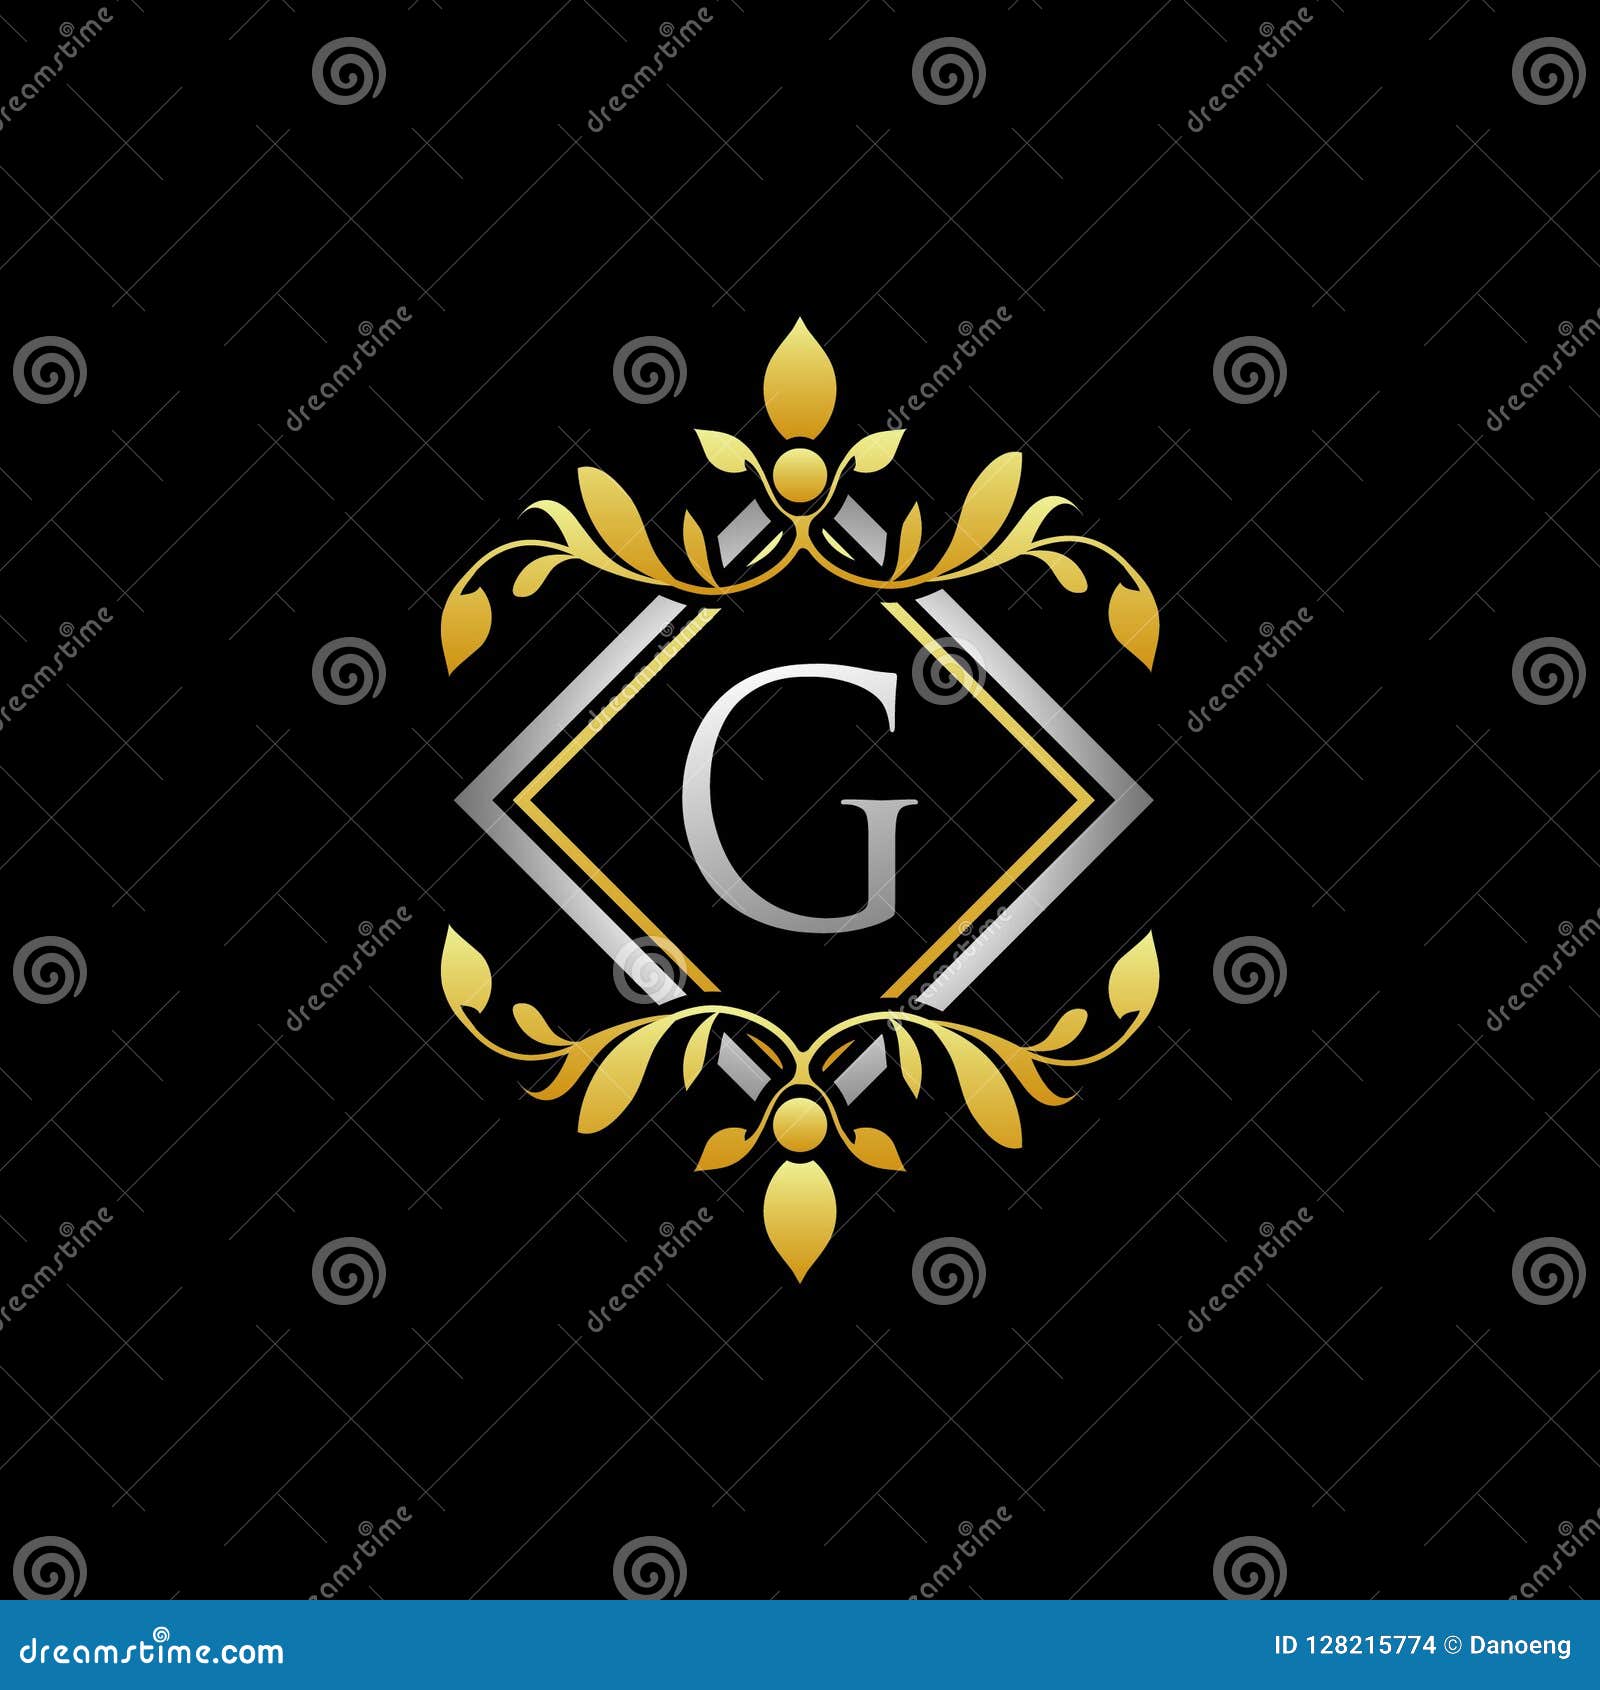 Golden Geometric Royal G Letter Logo Stock Illustration Illustration Of Golden Gold